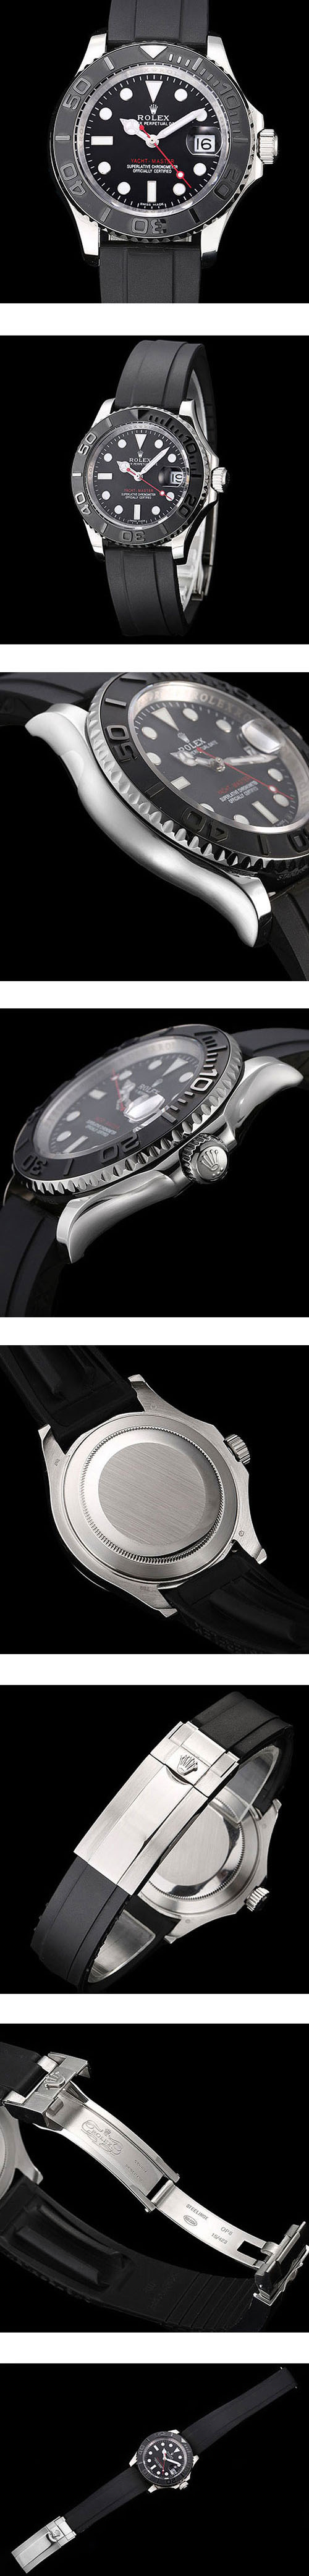 【おてがる配送】 高級腕時計のROLEX コピー ヨットマスター40 2813ムーブメント  ブラック　デイト表示  ラバーベルト